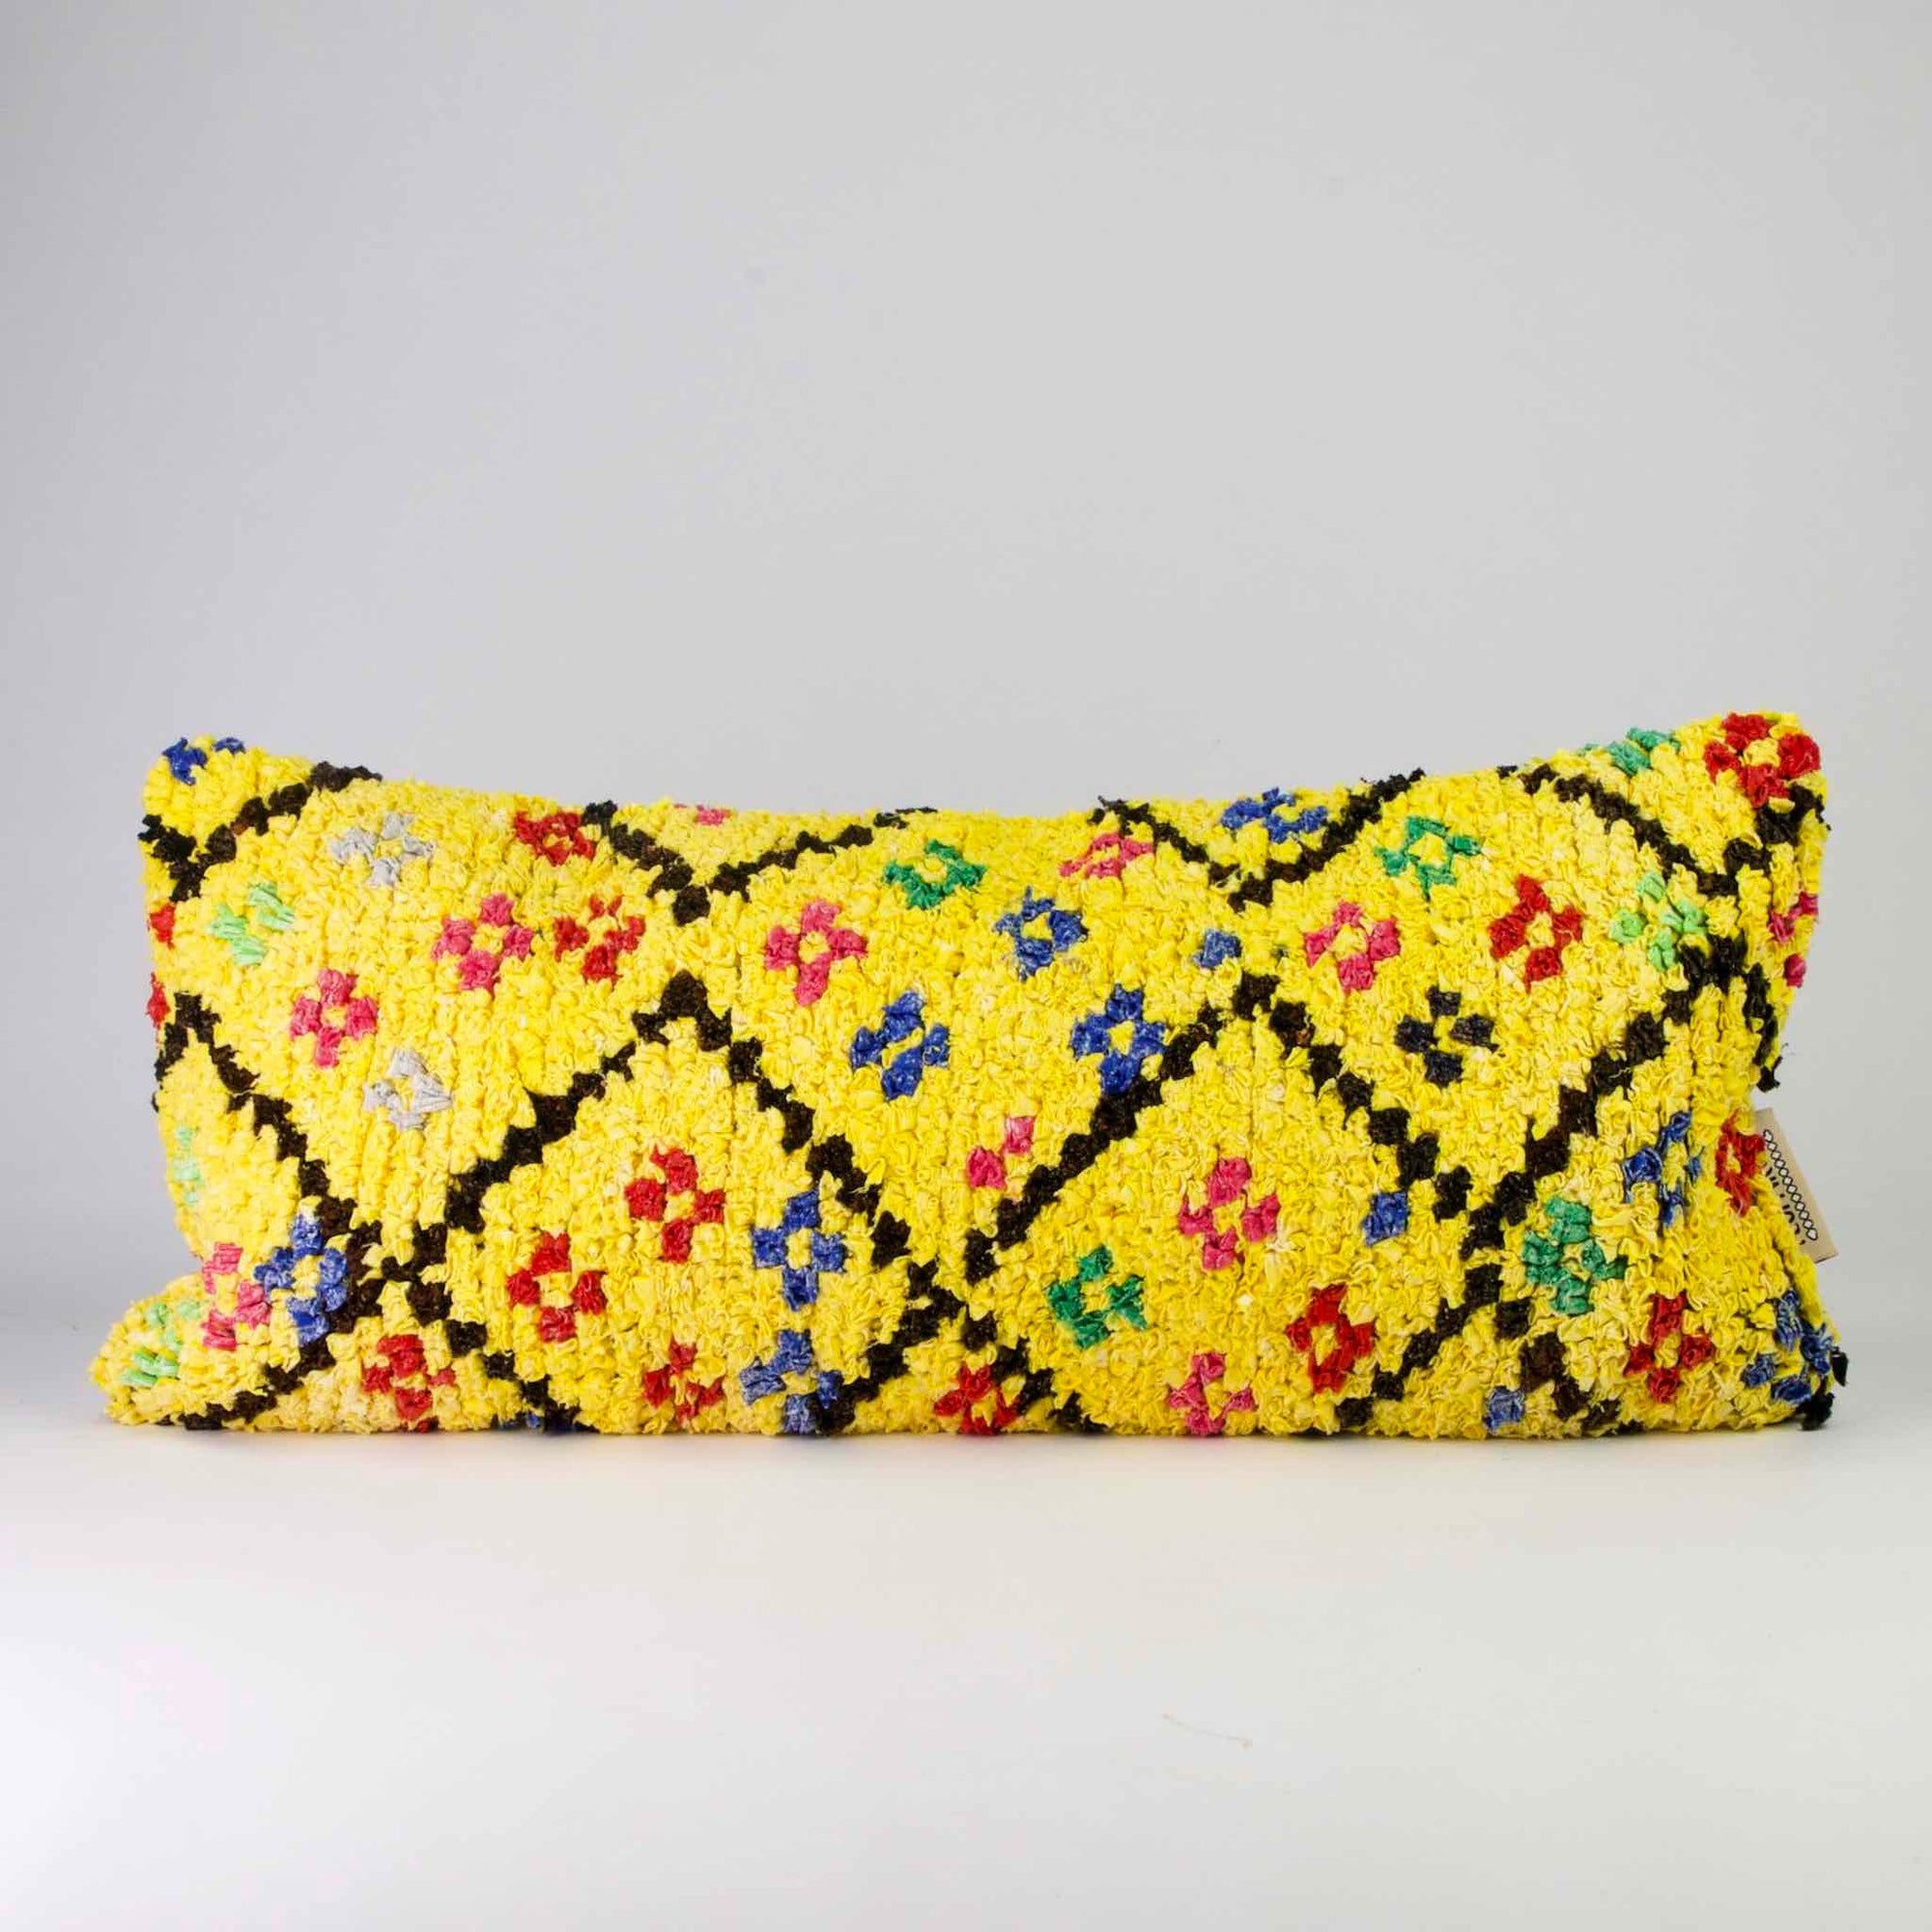 Yellow Boucherouite lumbar pillow. The Moroccan lumbar pillow has many colorful dots.